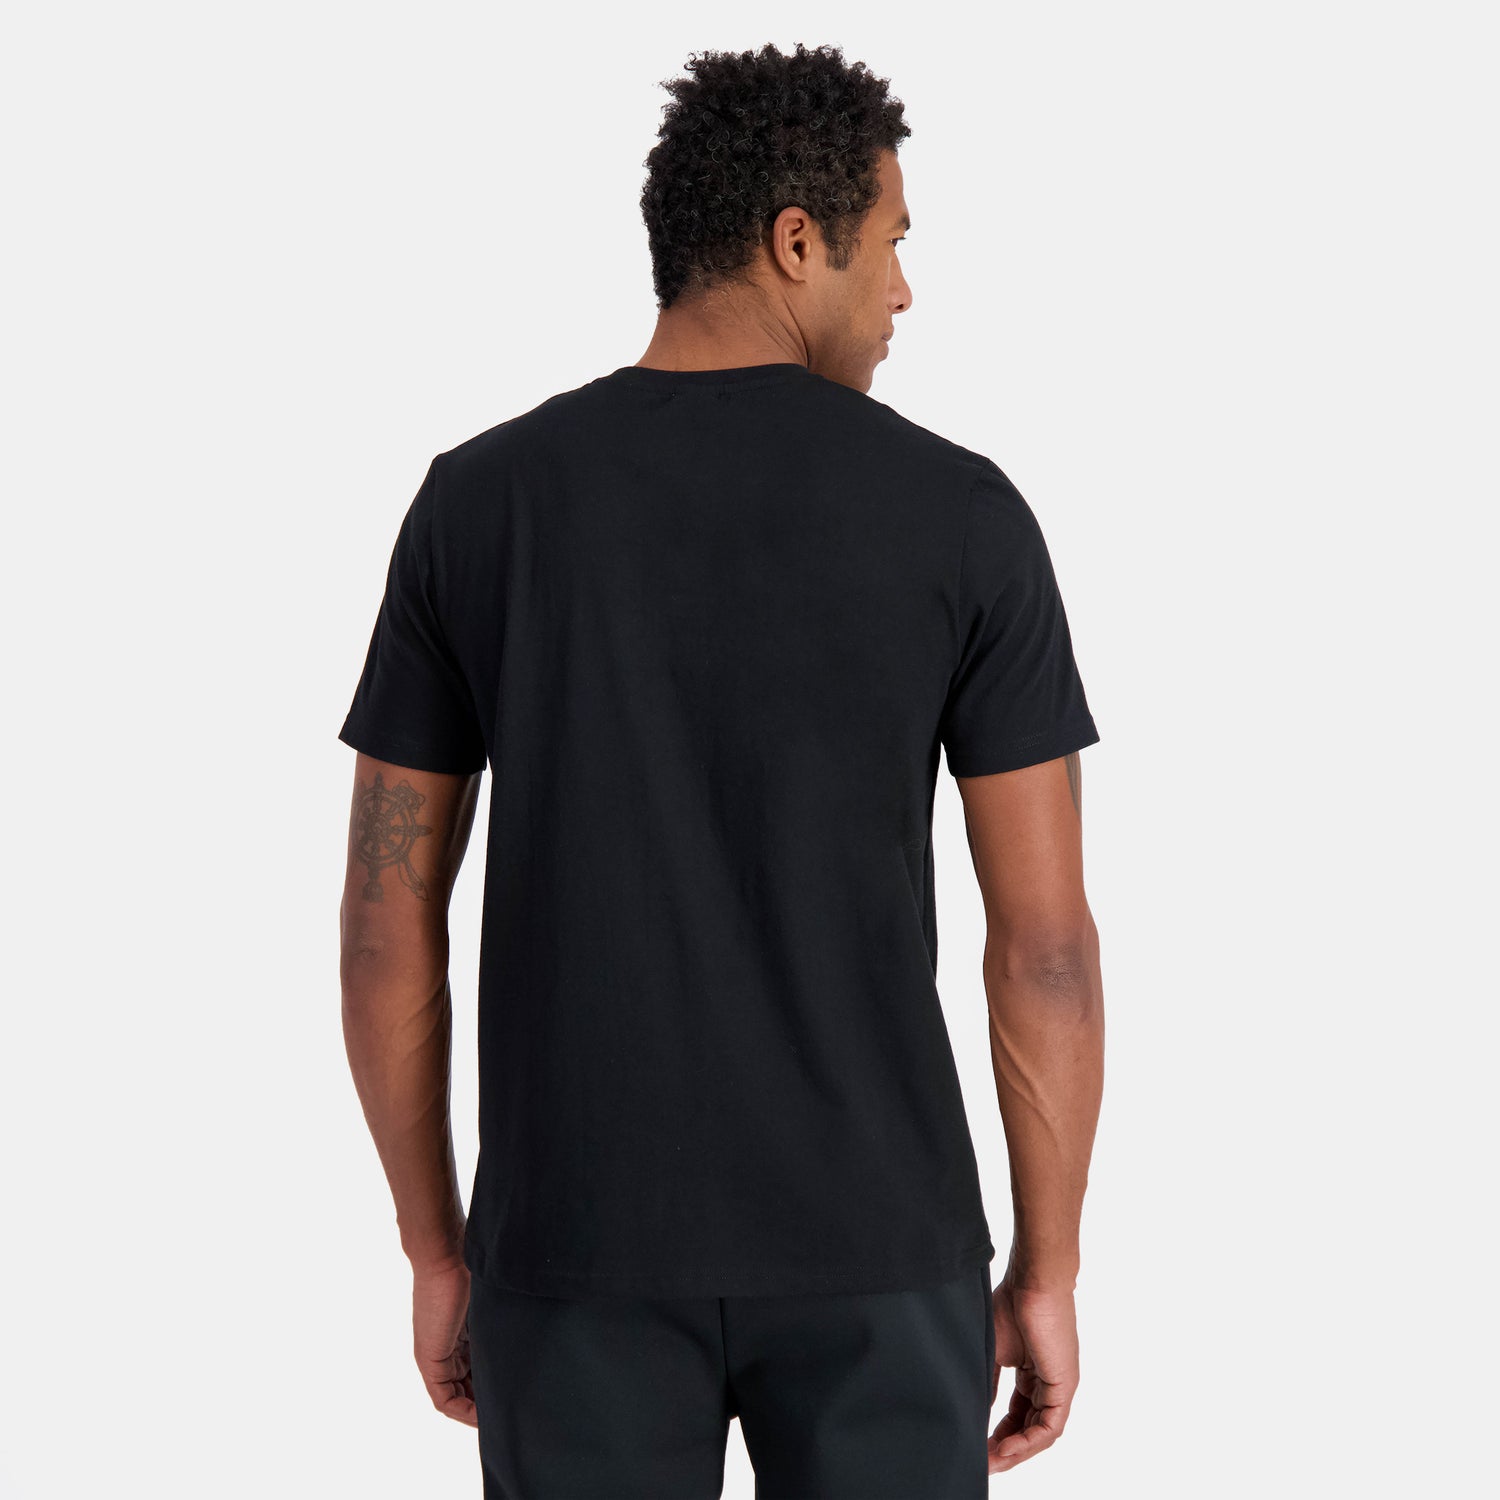 2411173-LA PAIX Tee SS N°1 M black | T-shirt motif «La Paix»  Homme